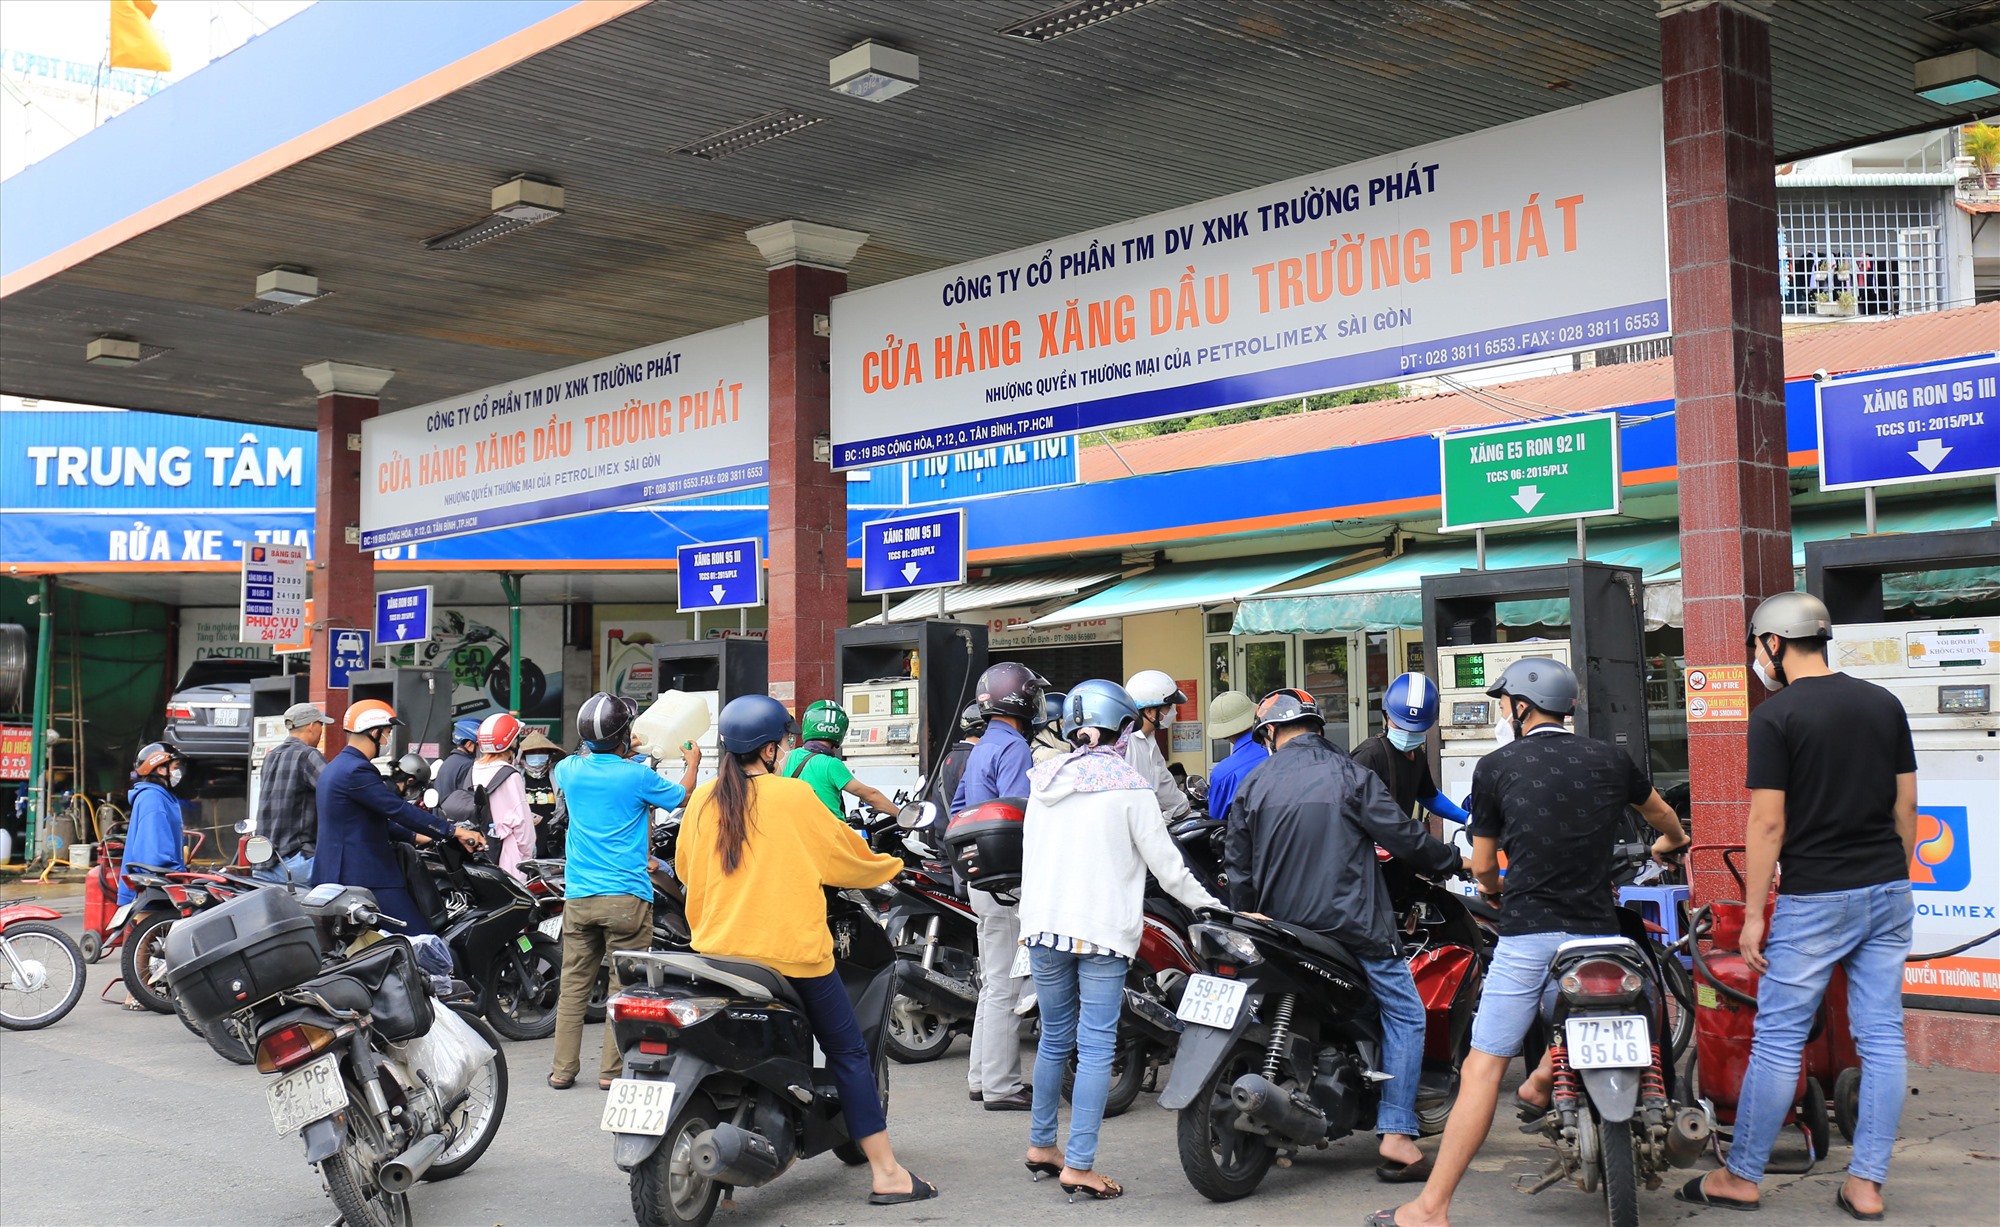 Tại cửa hàng xăng dầu Trường Phát trên đường Cộng Hoà, Q.Tân Bình vào khoảng 14 giờ, đông người đứng xếp hàng chờ tới lượt đổ xăng.